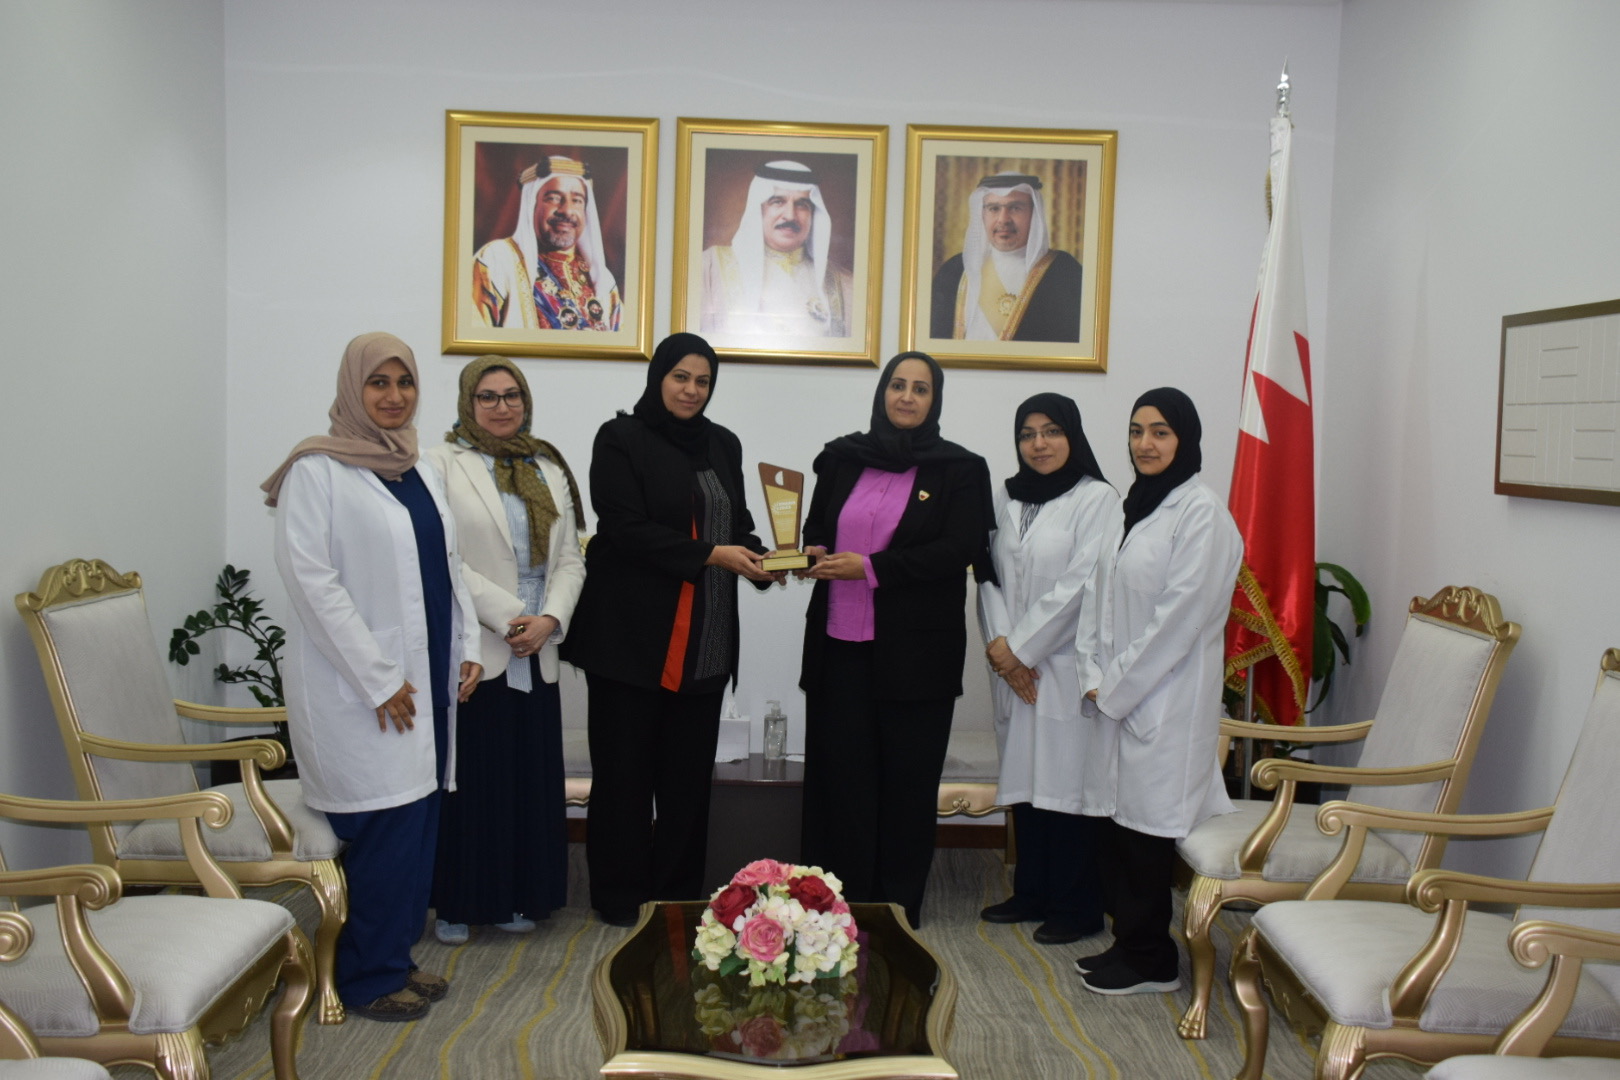 وزيرة الصحة تستقبل فريق المركز الوطني للإنفلونزا بمملكة البحرين بمناسبة حصوله على جائزة منظمة الصحة العالمية لإقليم شرق المتوسط